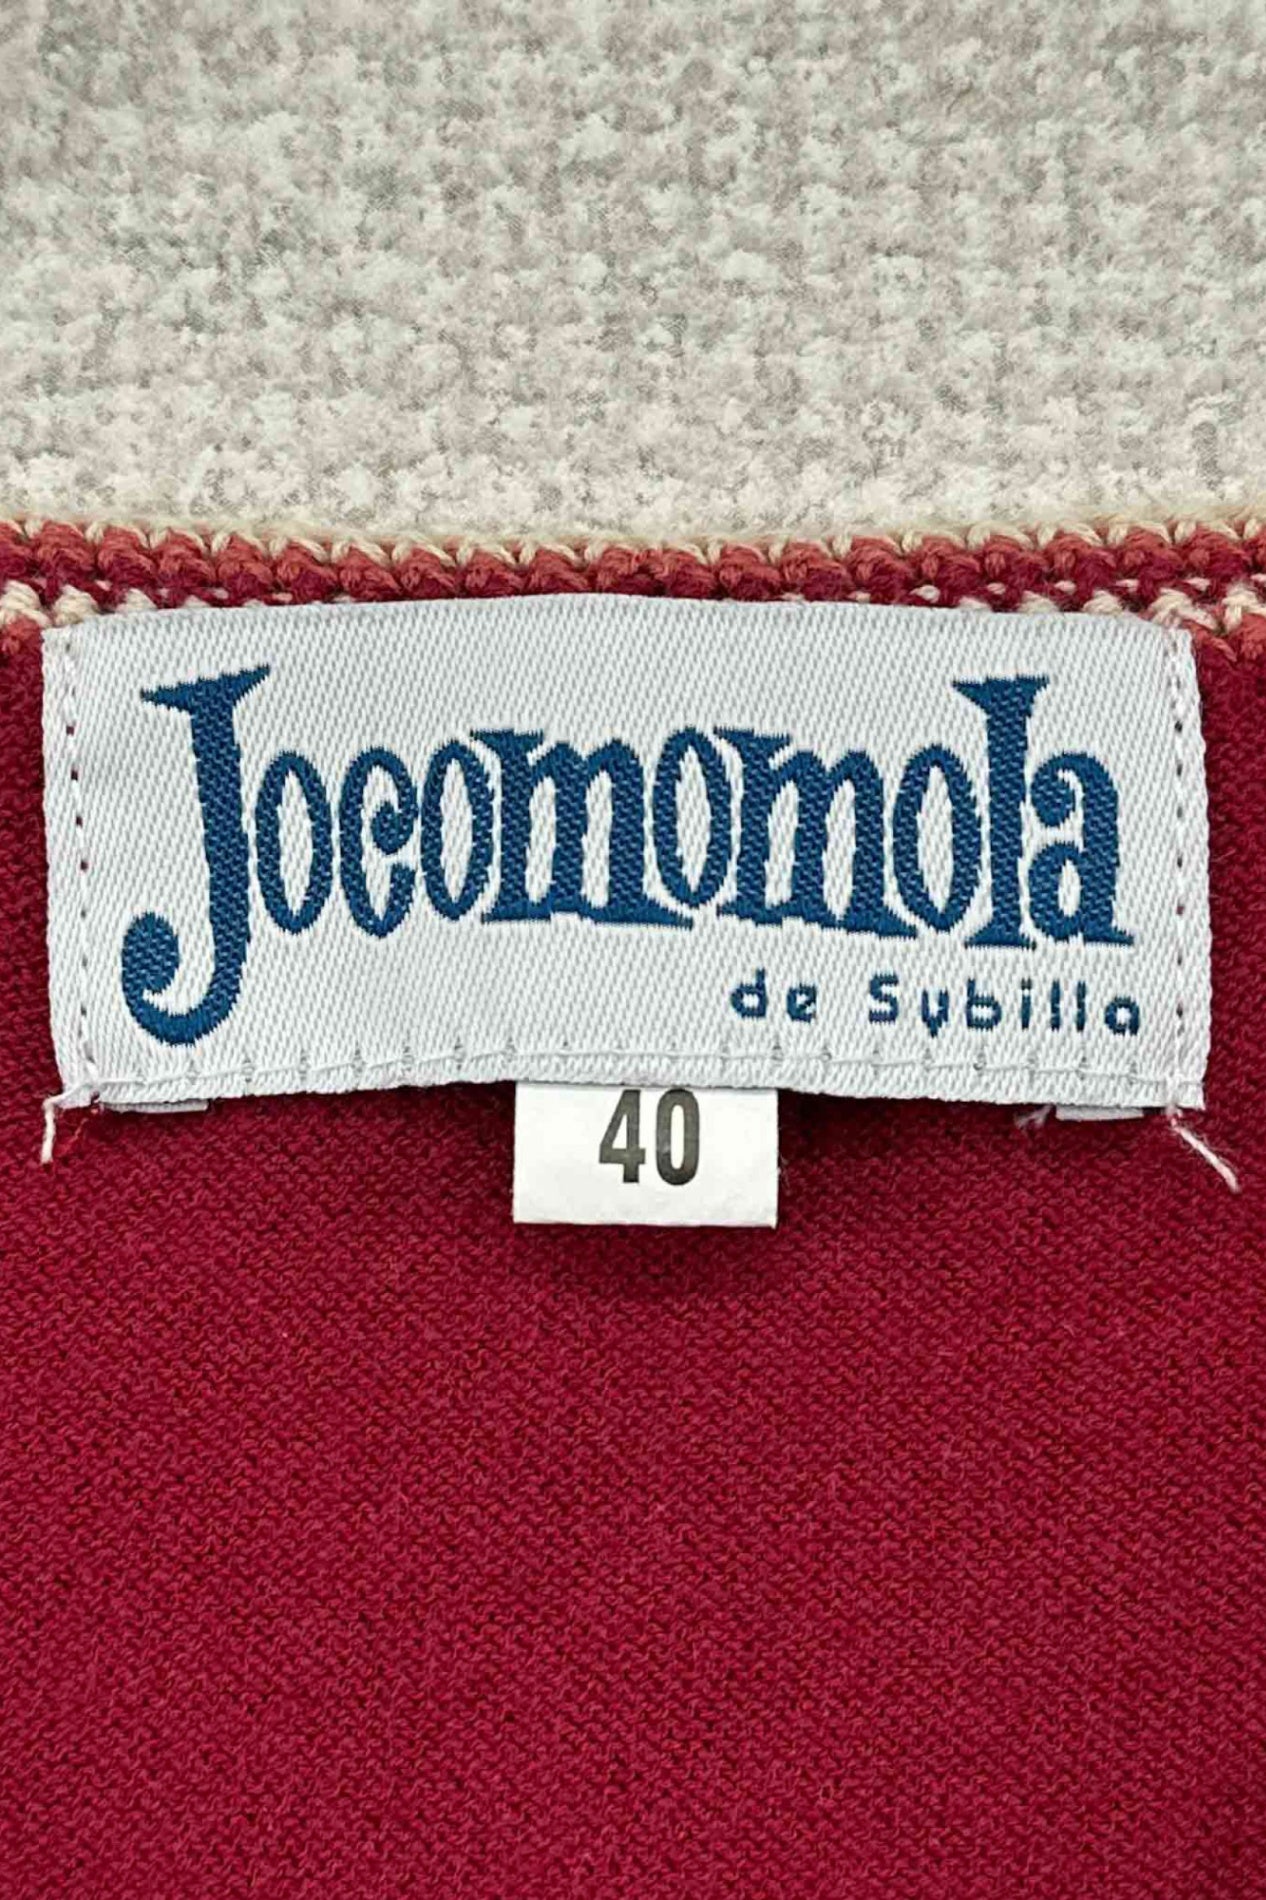 Jocomomola by sybilla 红色开衫